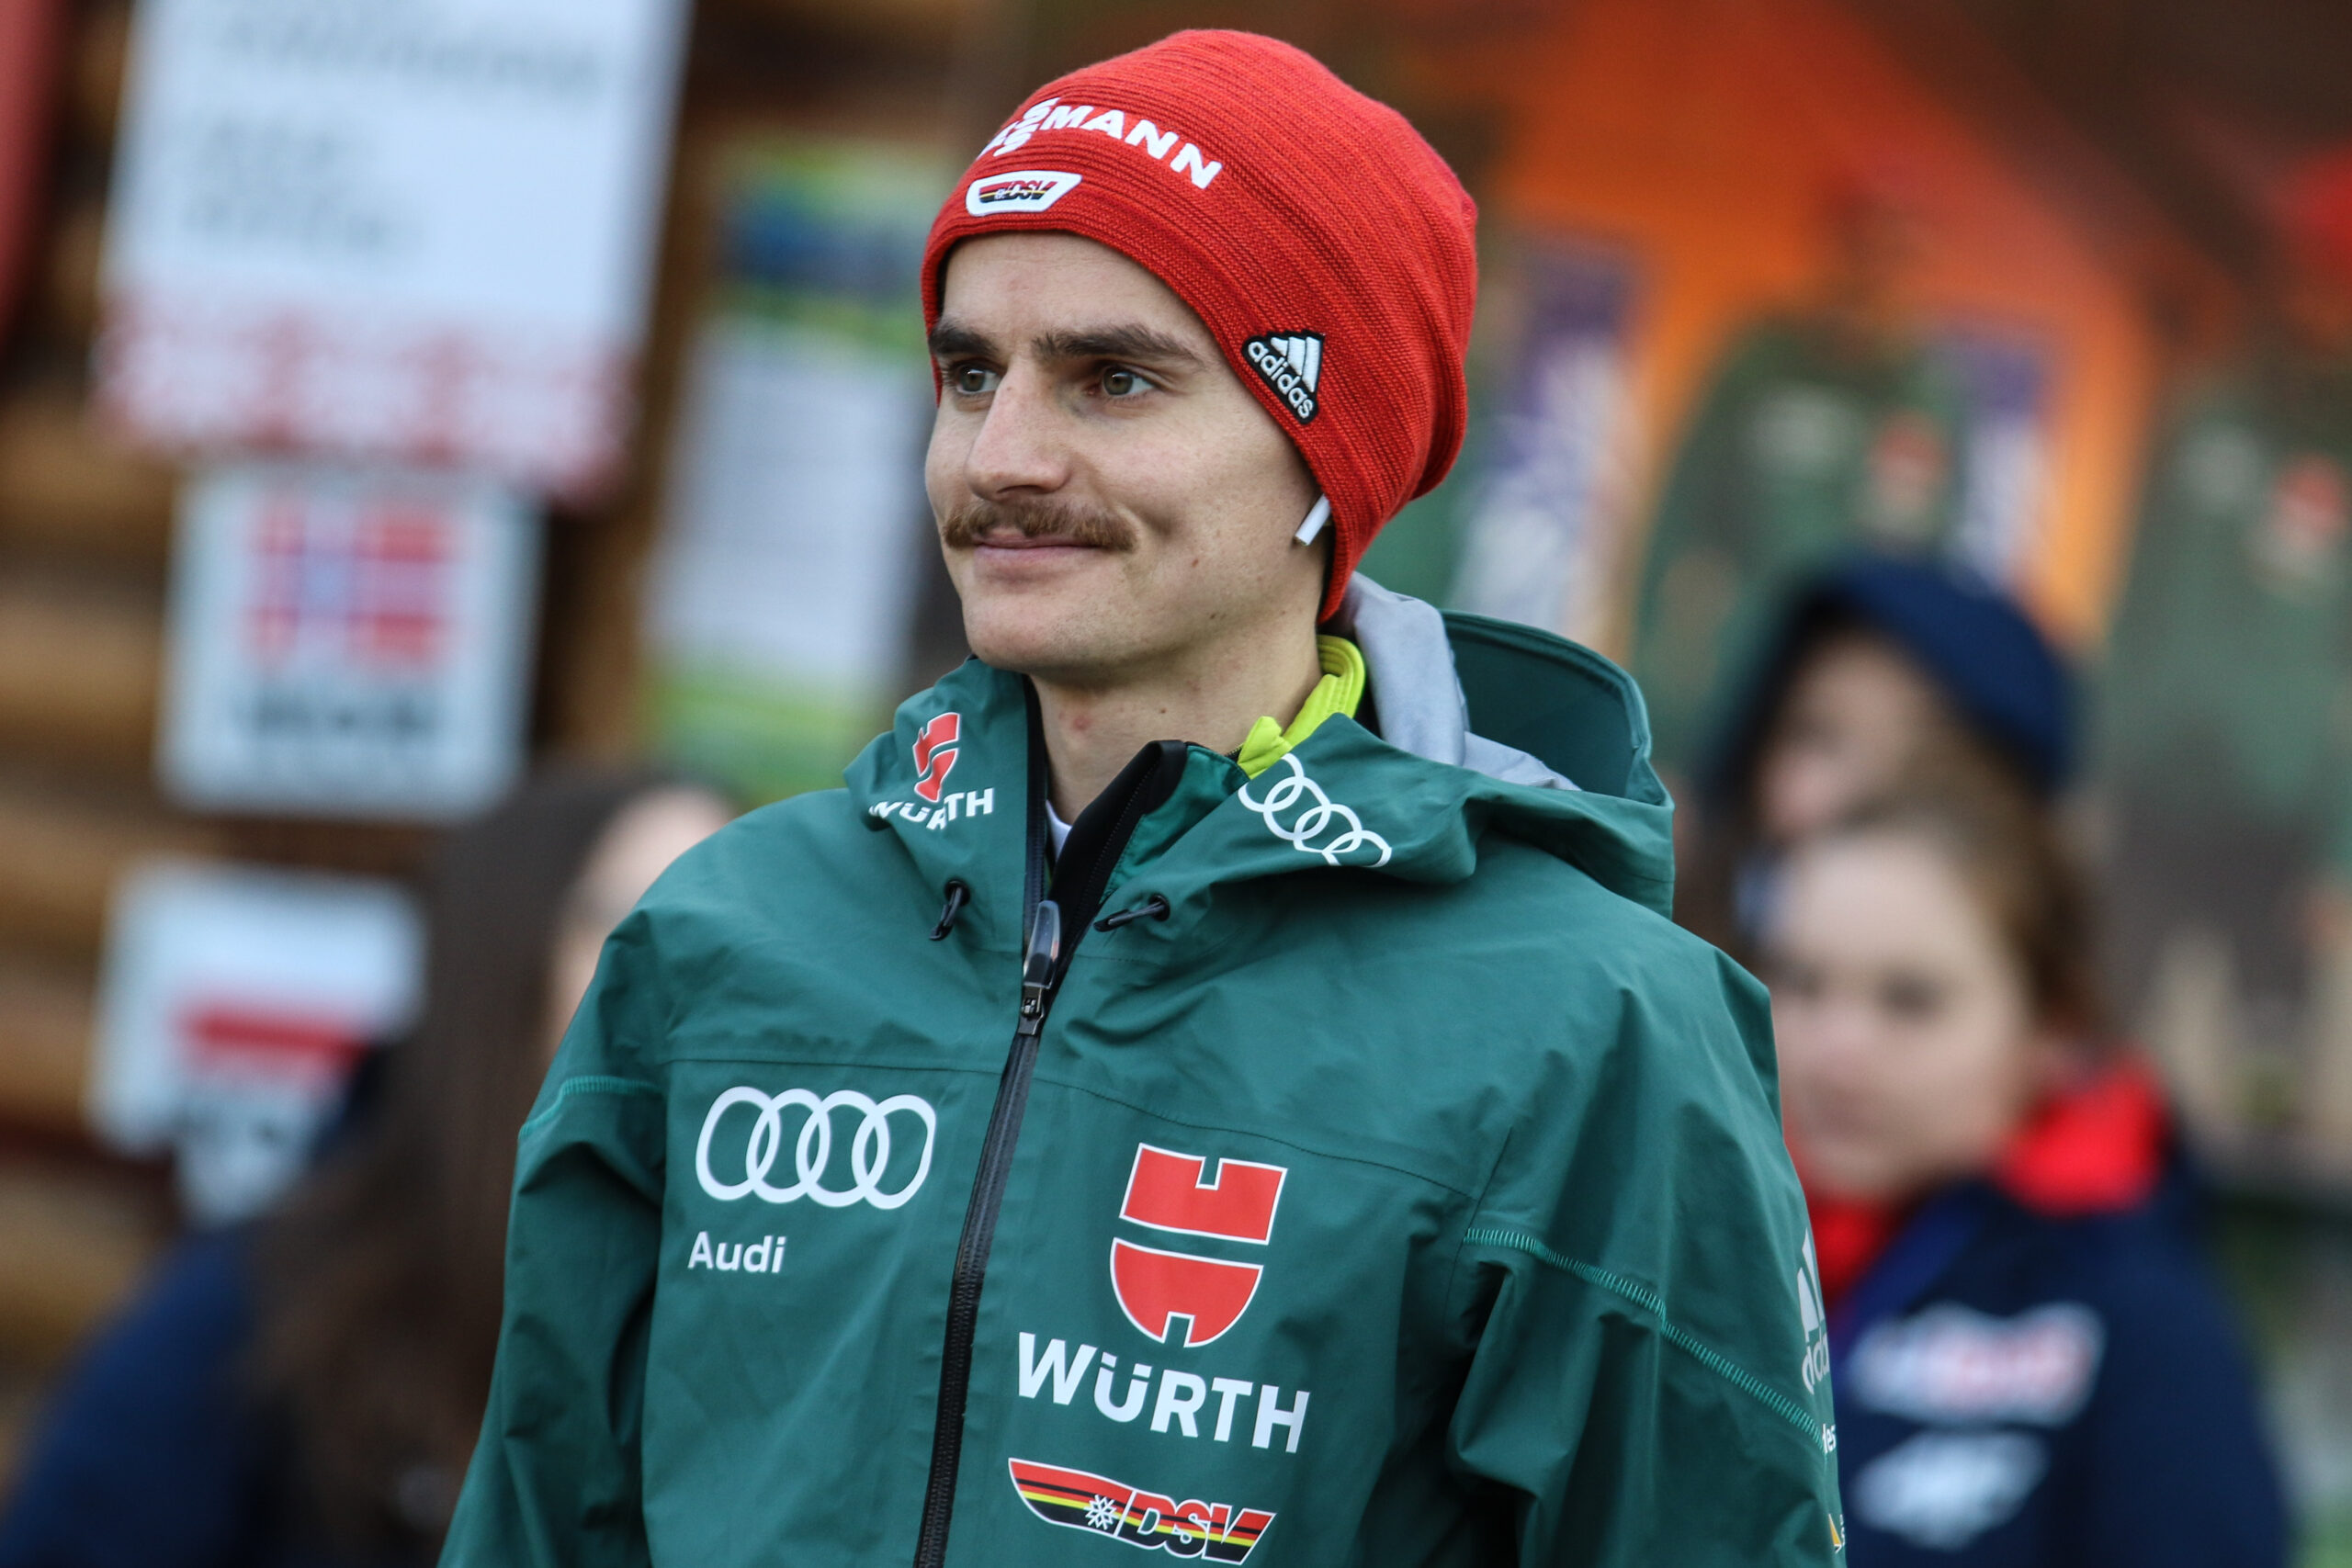 Richard Freitag gewinnt FIS Cup in Szczyrk (POL)